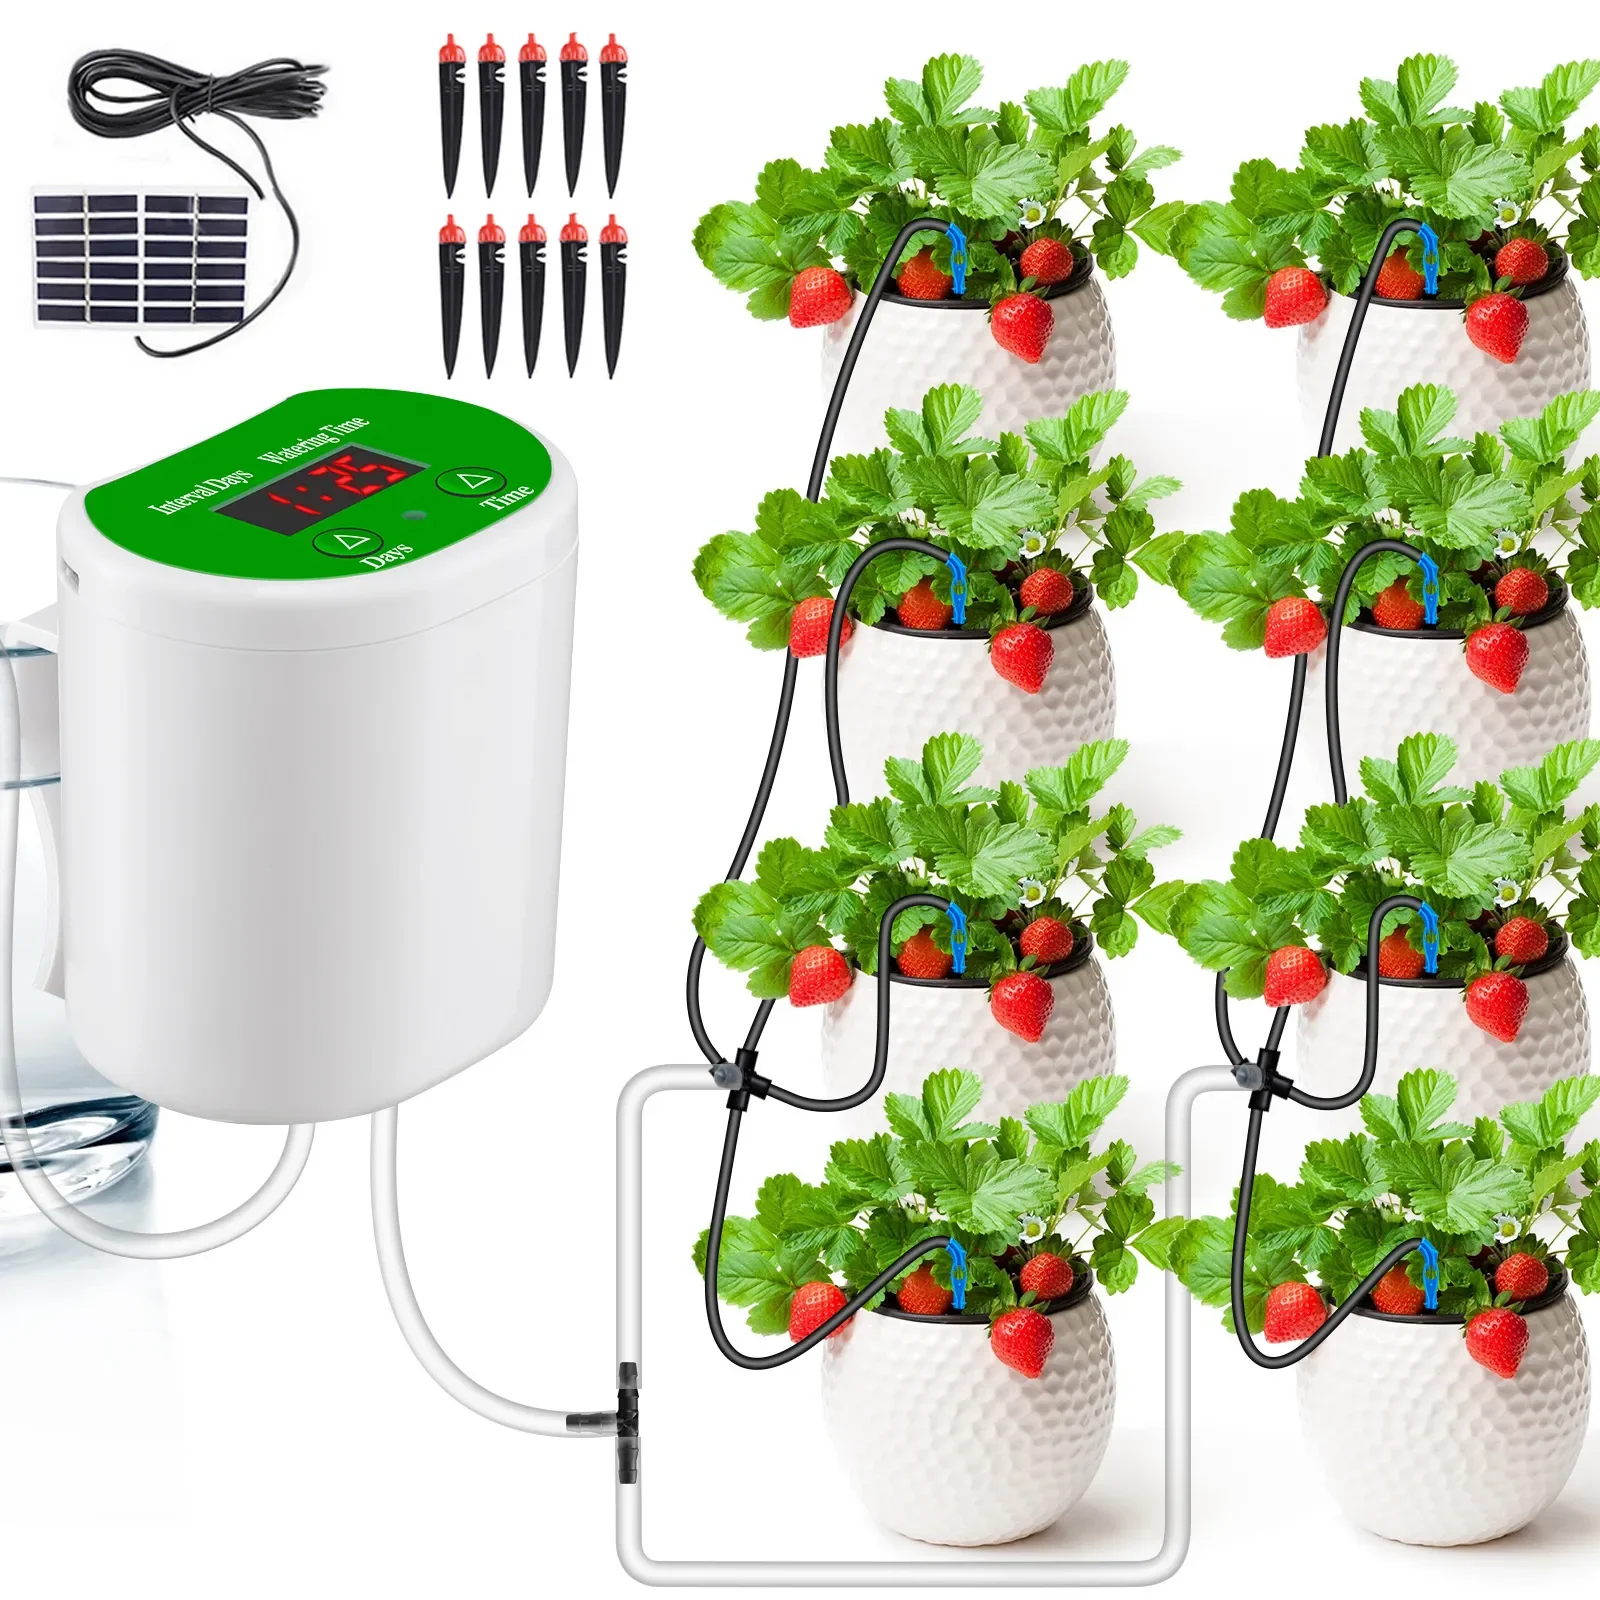 Полив
Потрясающее интеллектуальное устройство автоматического полива на солнечной энергии, система орошения по таймеру Для полива сада, ваших комнатных растений.